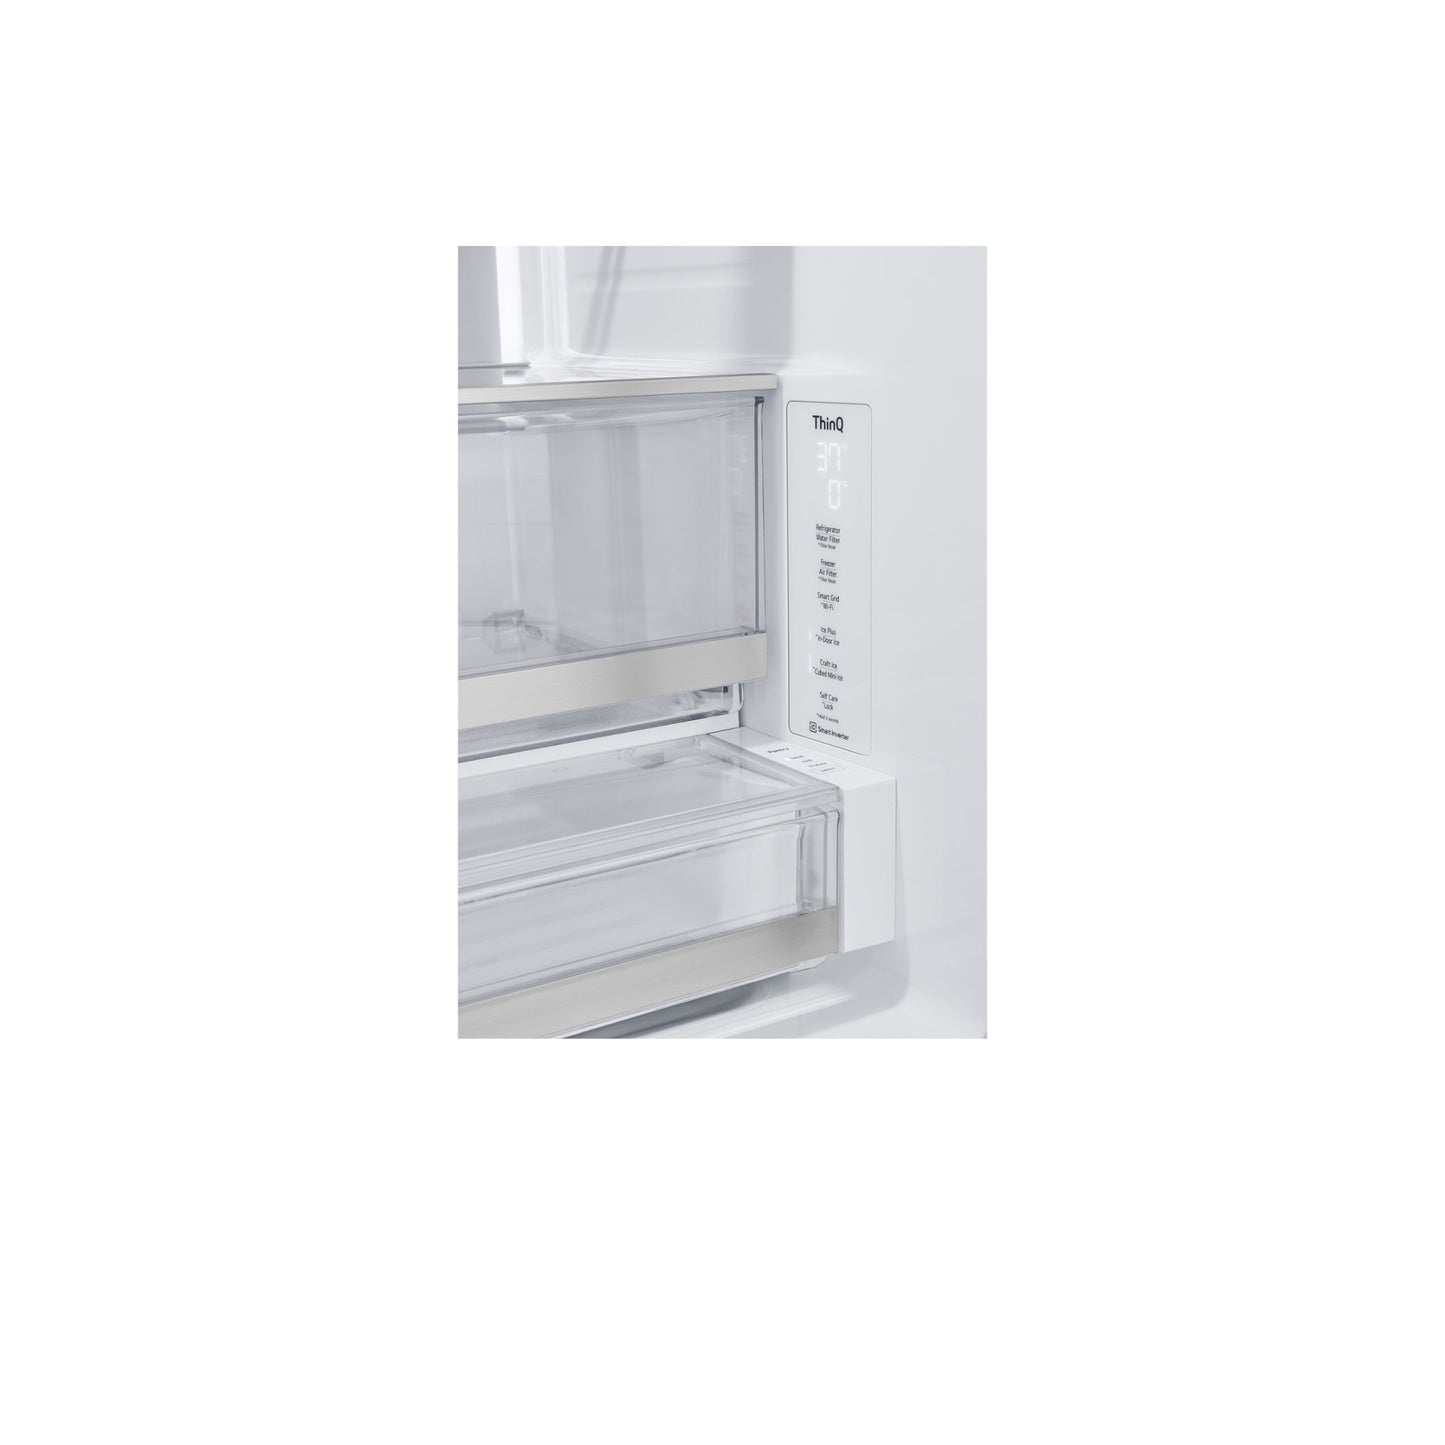 26 متر مكعب. قدم. ثلاجة ذات باب فرنسي بمرآة ذكية InstaView® Counter-Depth MAX™ مزودة بأربعة أنواع من الثلج 